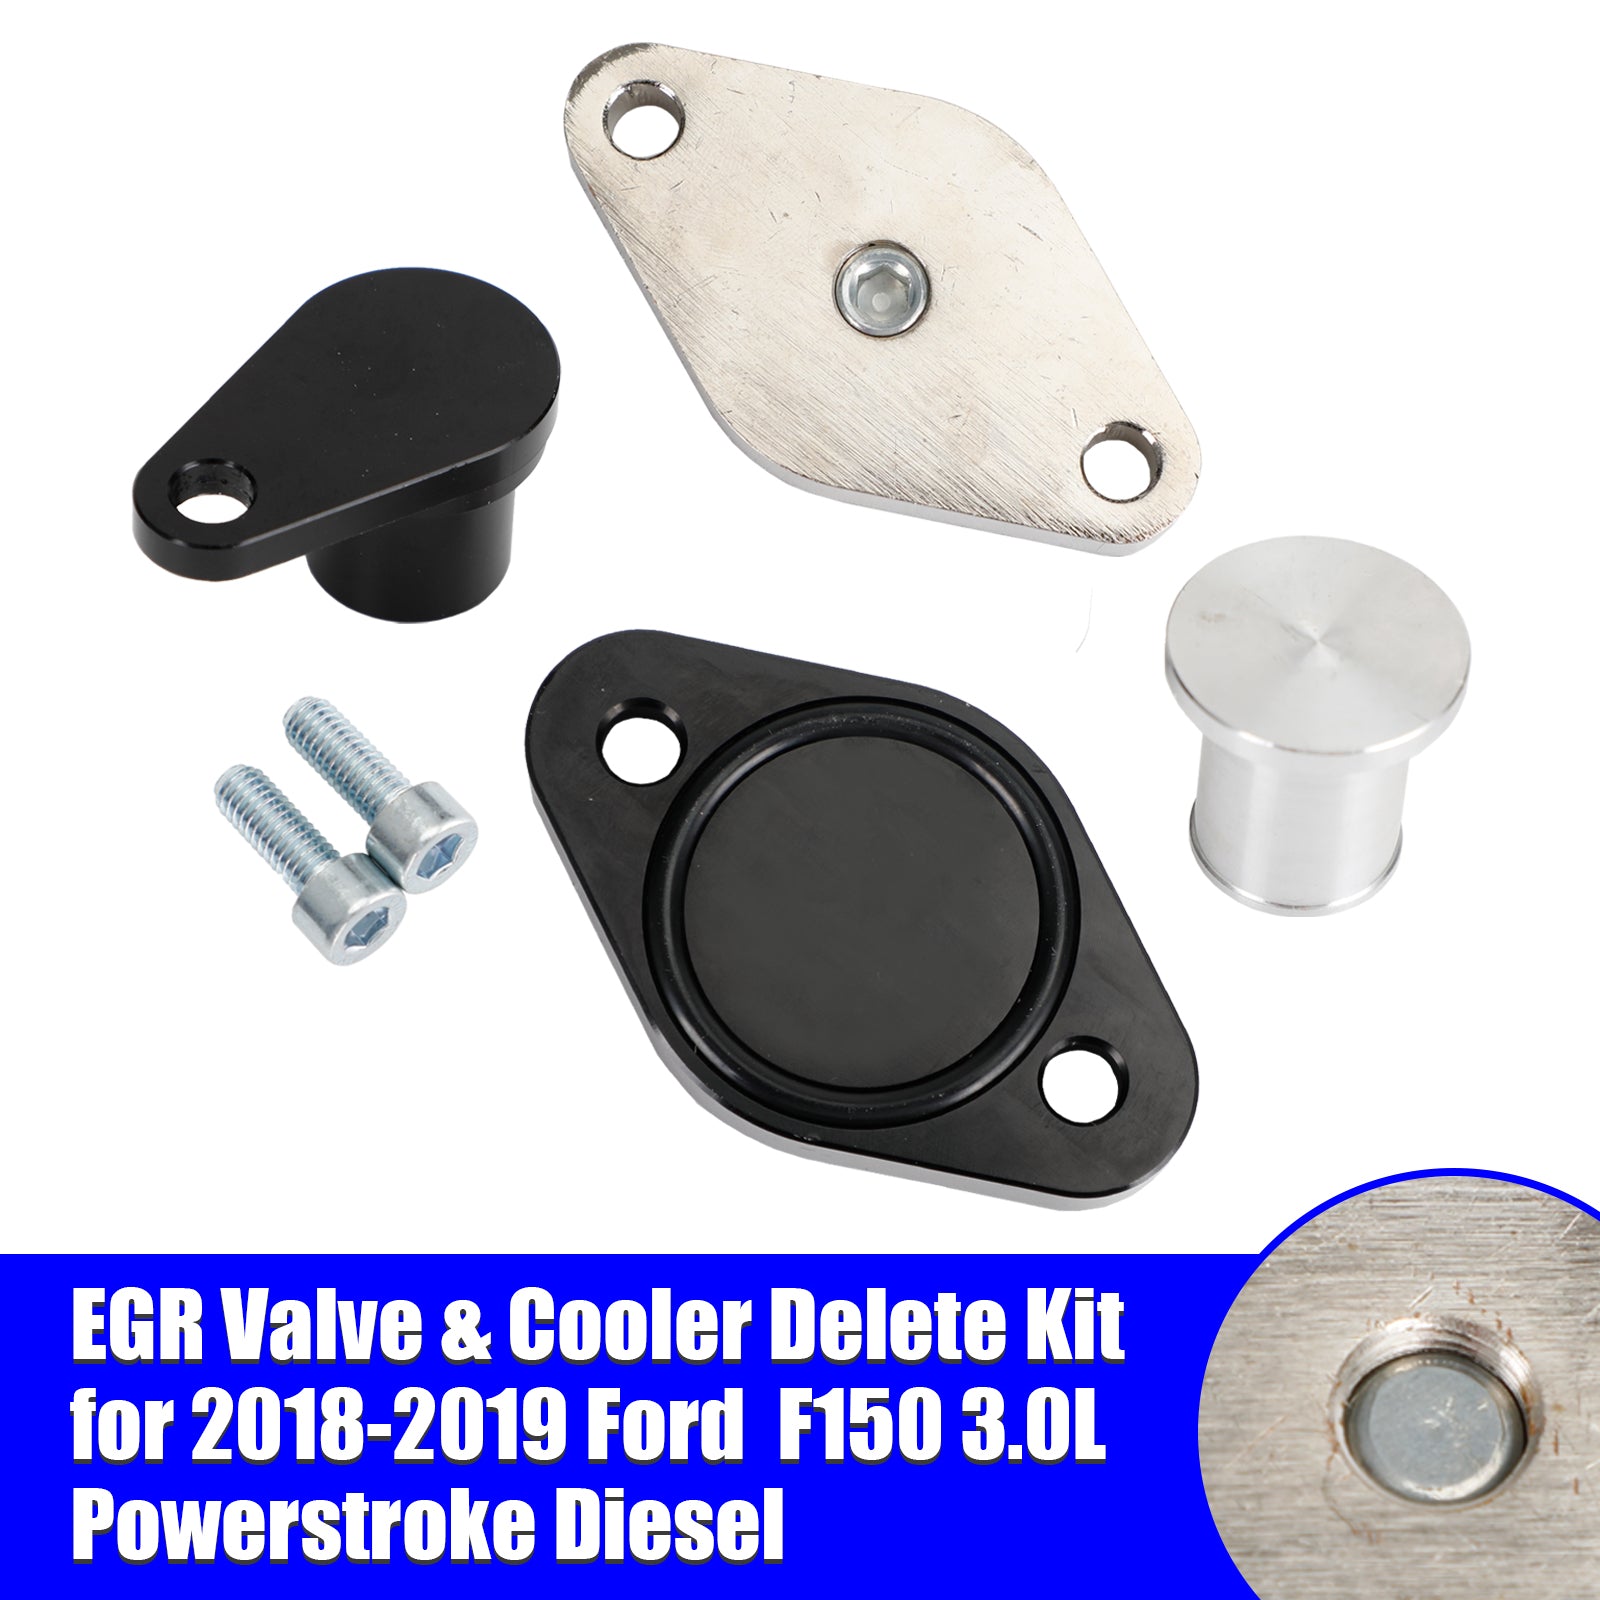 Ford 2018-2019 F150 3.0L Powerstroke Diesel EGR Valve & Cooler Delete Kit